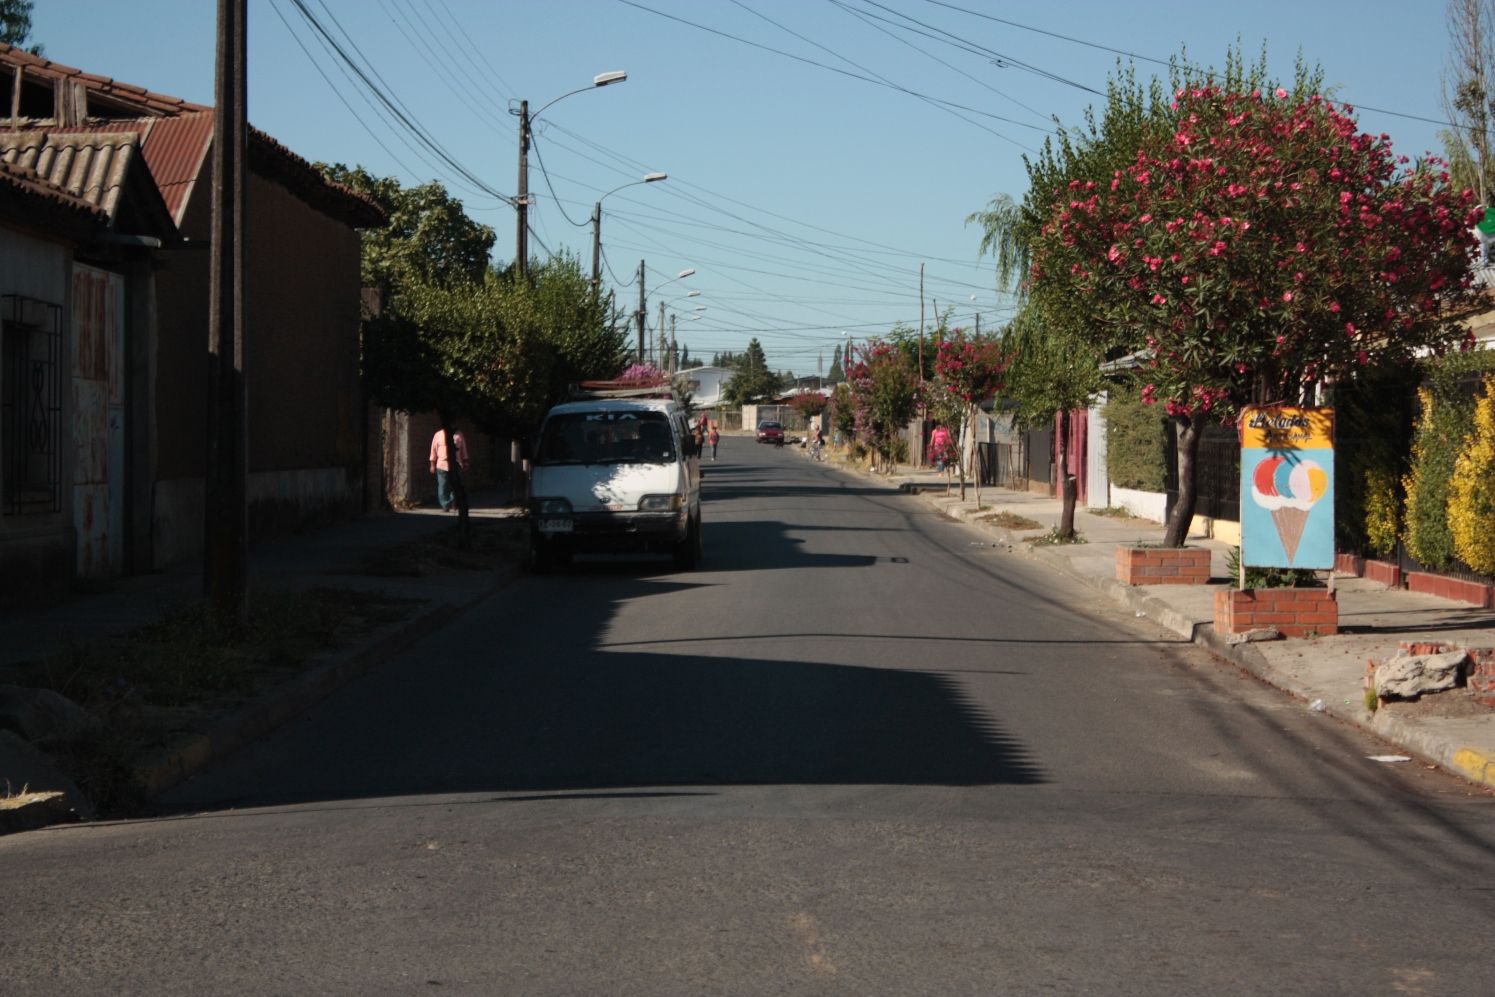 Letreros de No Ingreso a Camiones y cambio de sentido de tránsito a calle Miraflores (24) - copia